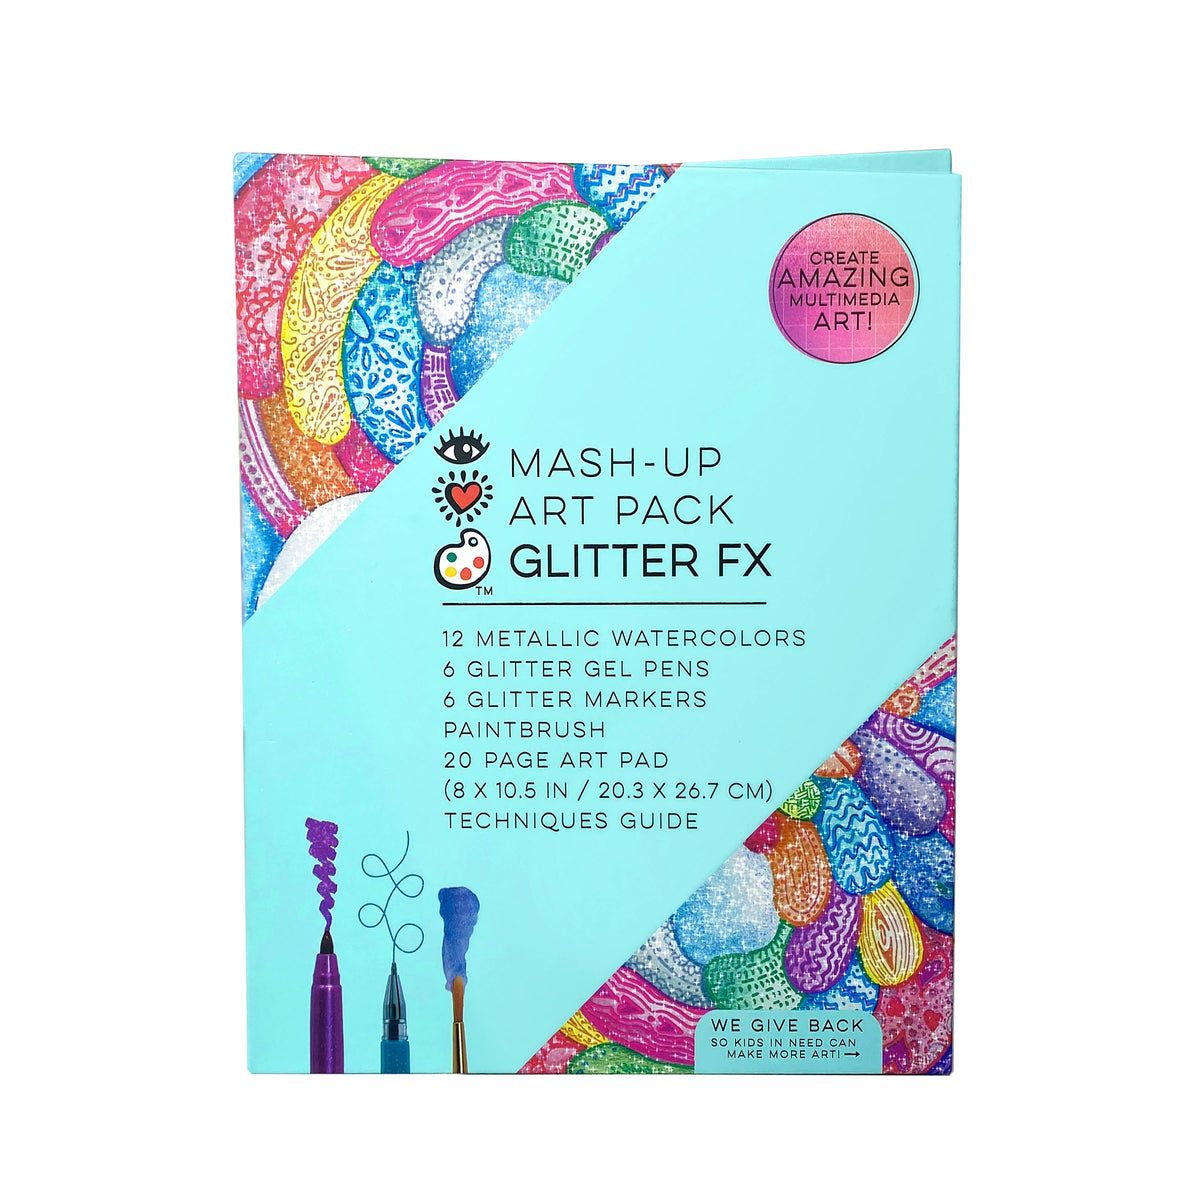 iHeartArt Mash-Up Art Pack Glitter FX